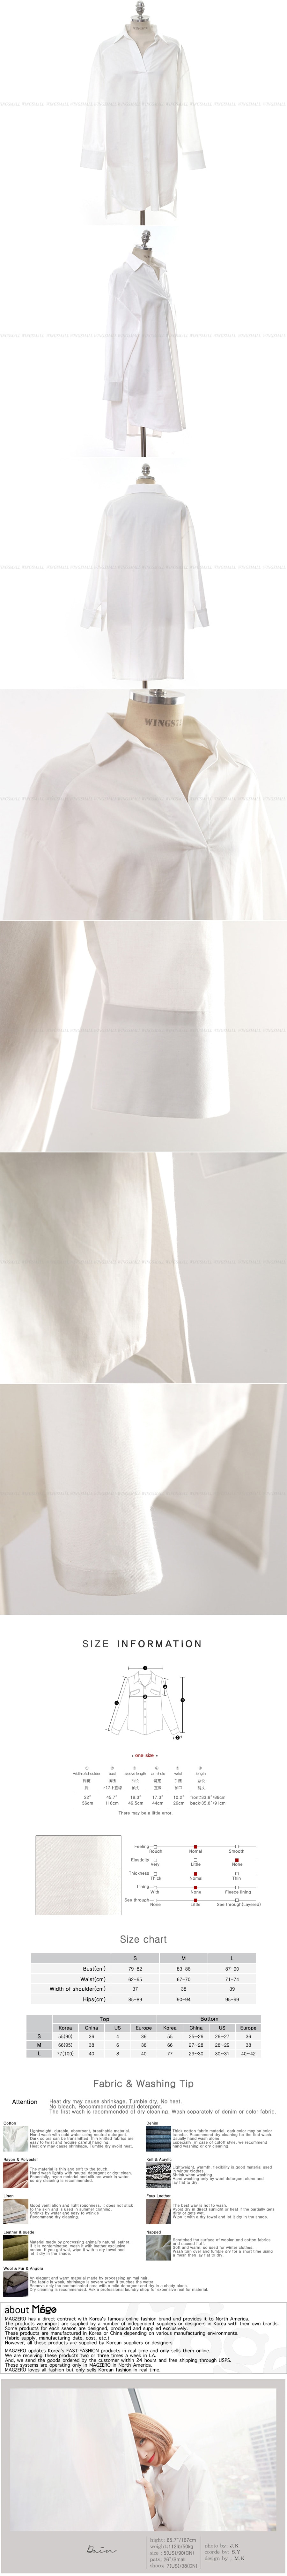 [Autumn New] Unbalance Long Blouse Shirt #White One Size(Free)